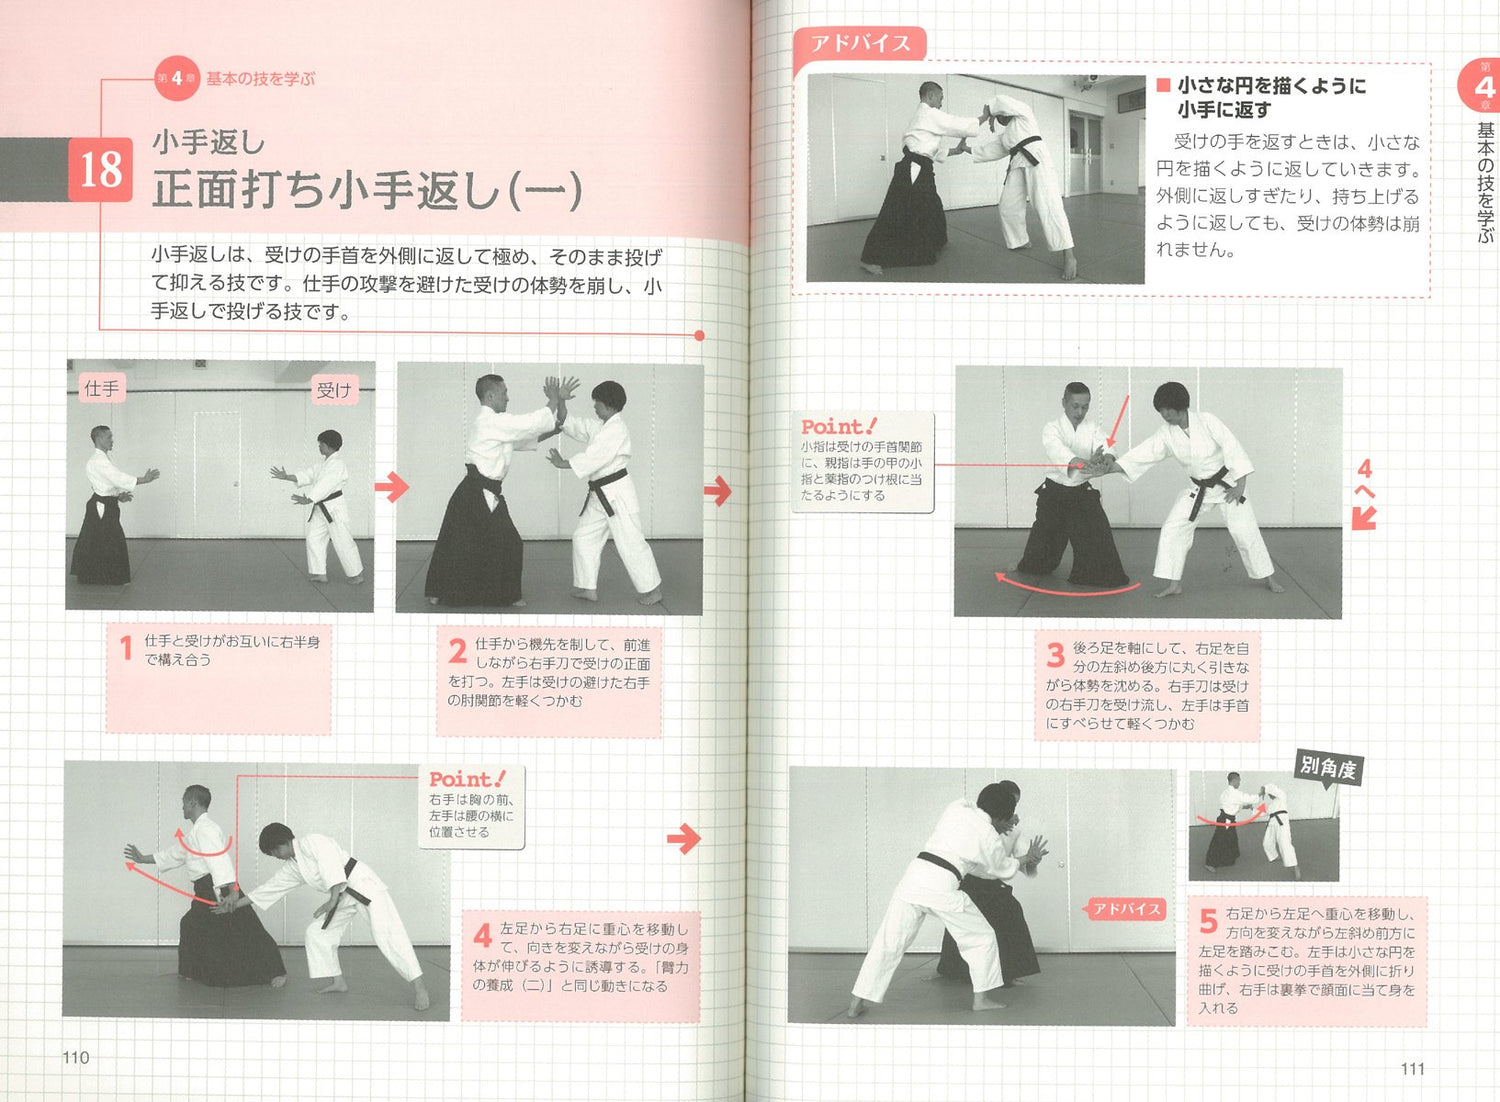 Aikido para principiantes: Fortalezca la mente y el cuerpo para la autodefensa y la salud Libro de Susumu Chino